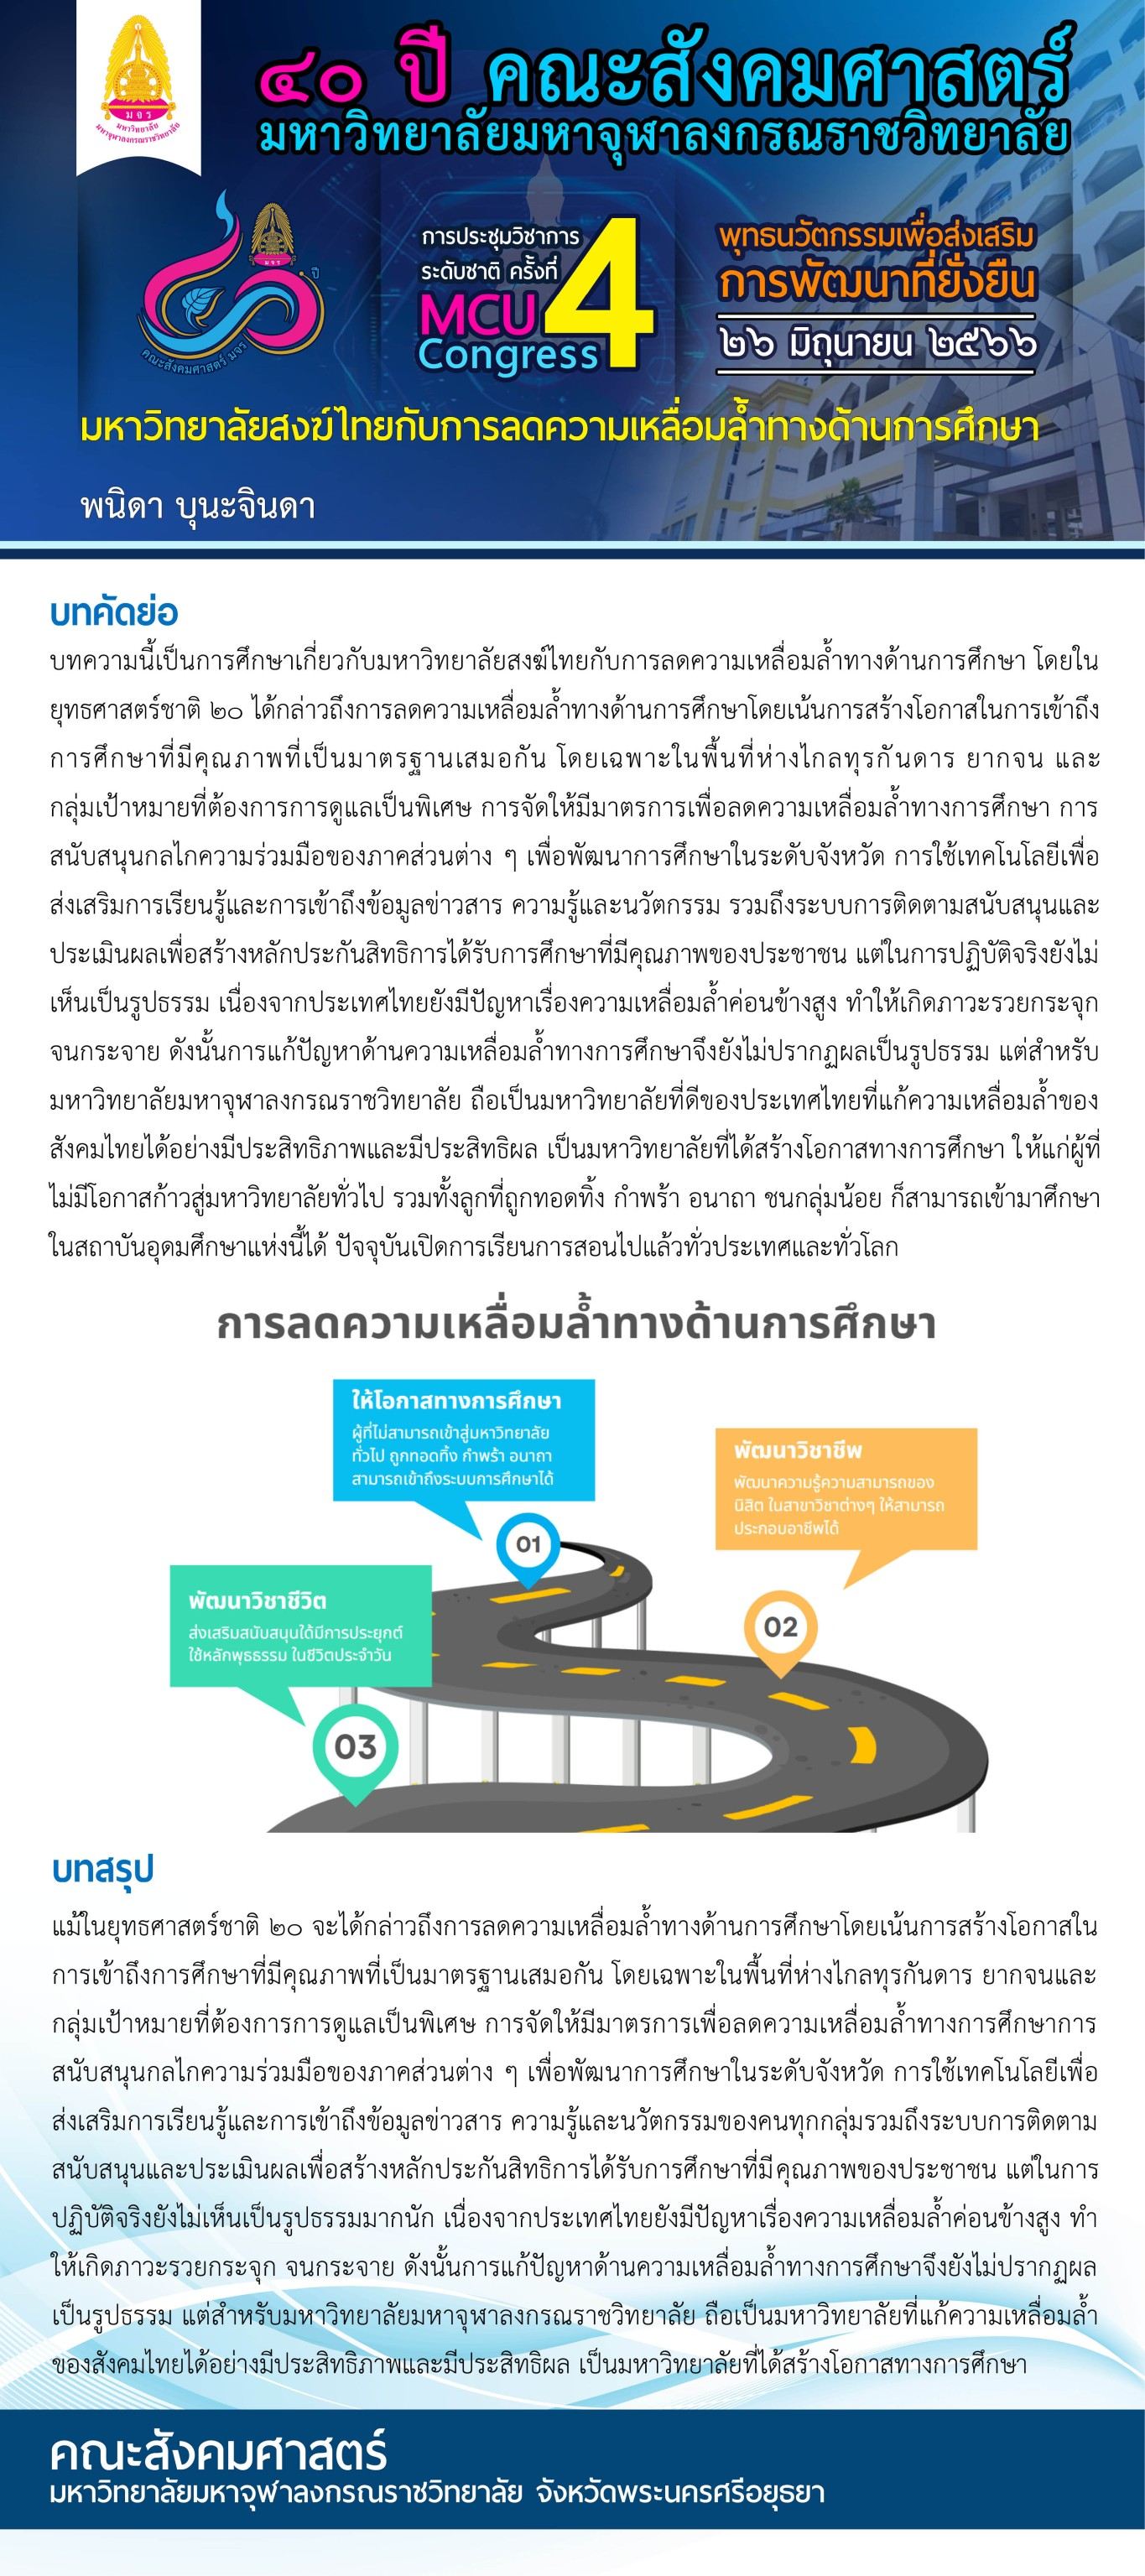 มหาวิทยาลัยสงฆ์ไทยกับการลดความเหลื่อมล้ำทางด้านการศึกษา